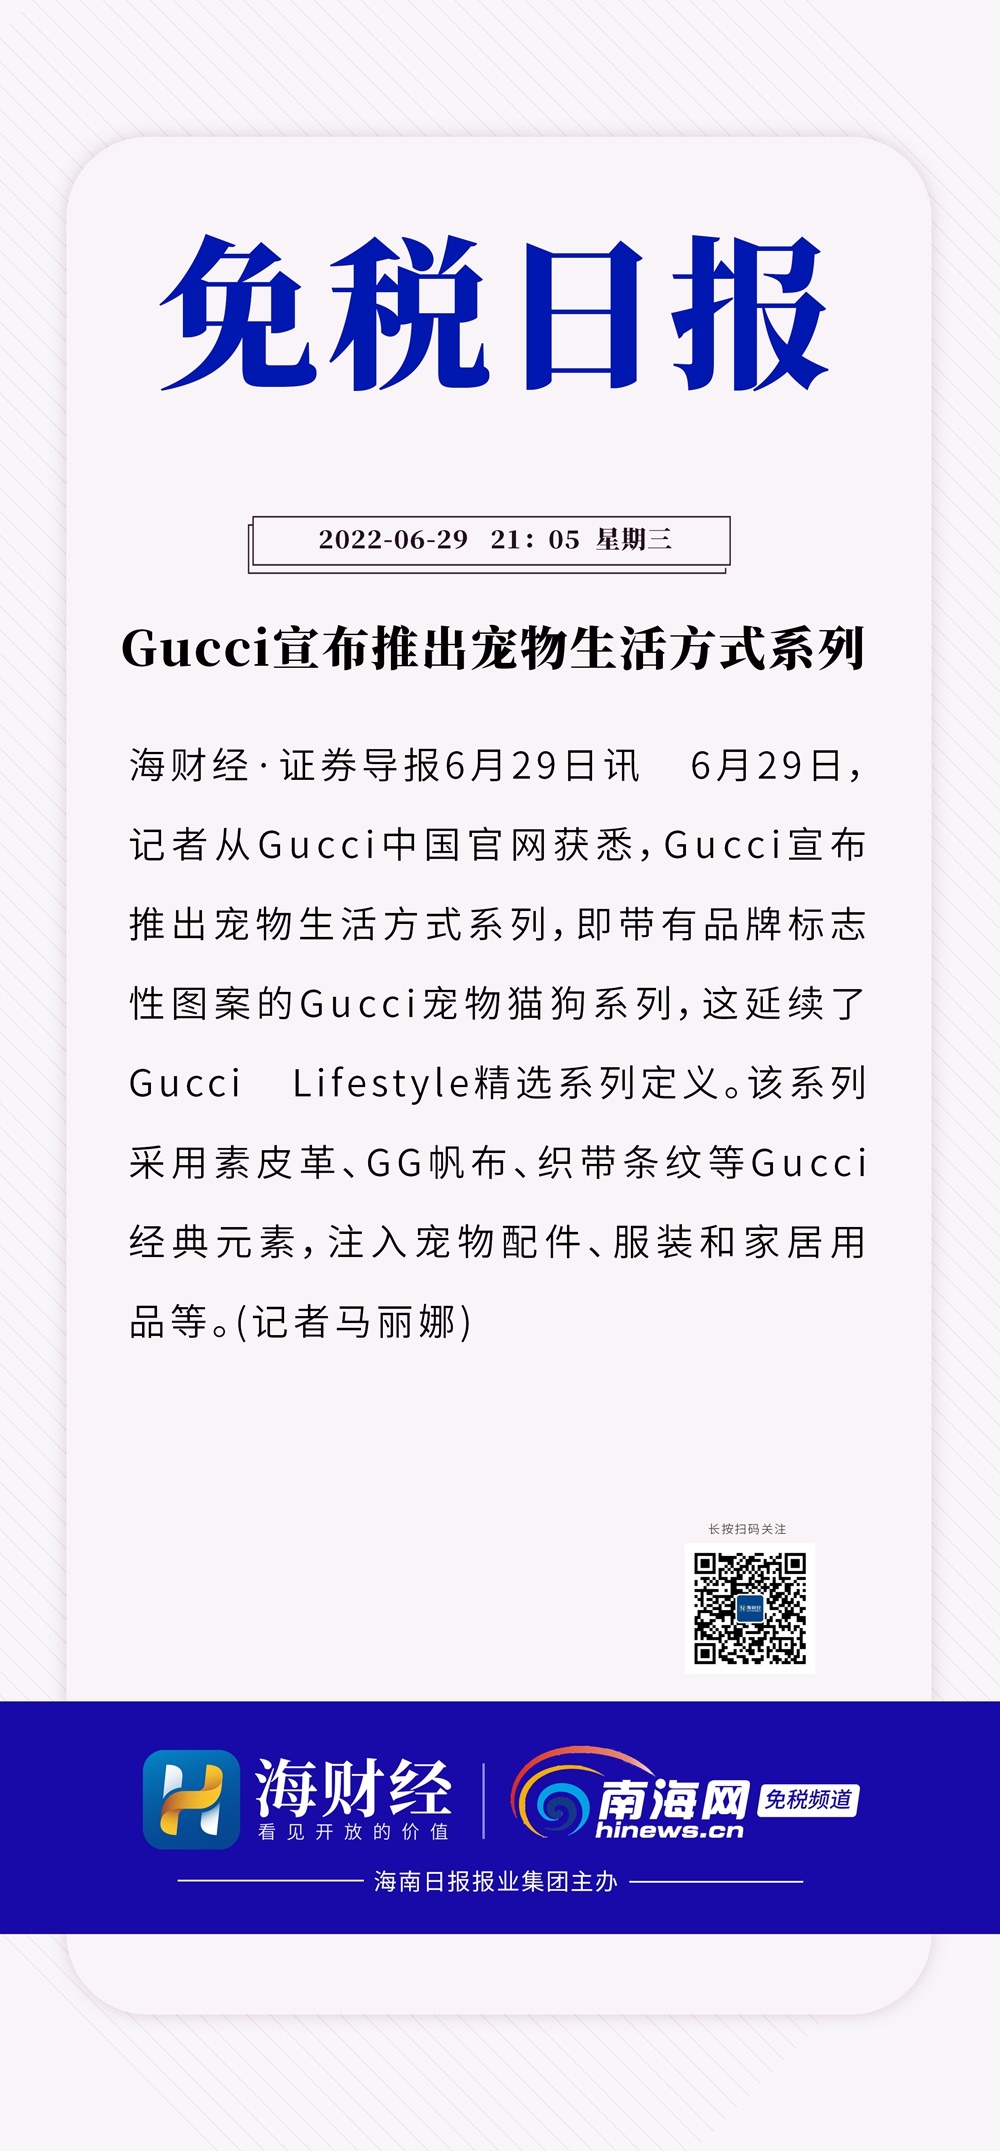 免税日报丨Gucci宣布推出宠物生活方式系列